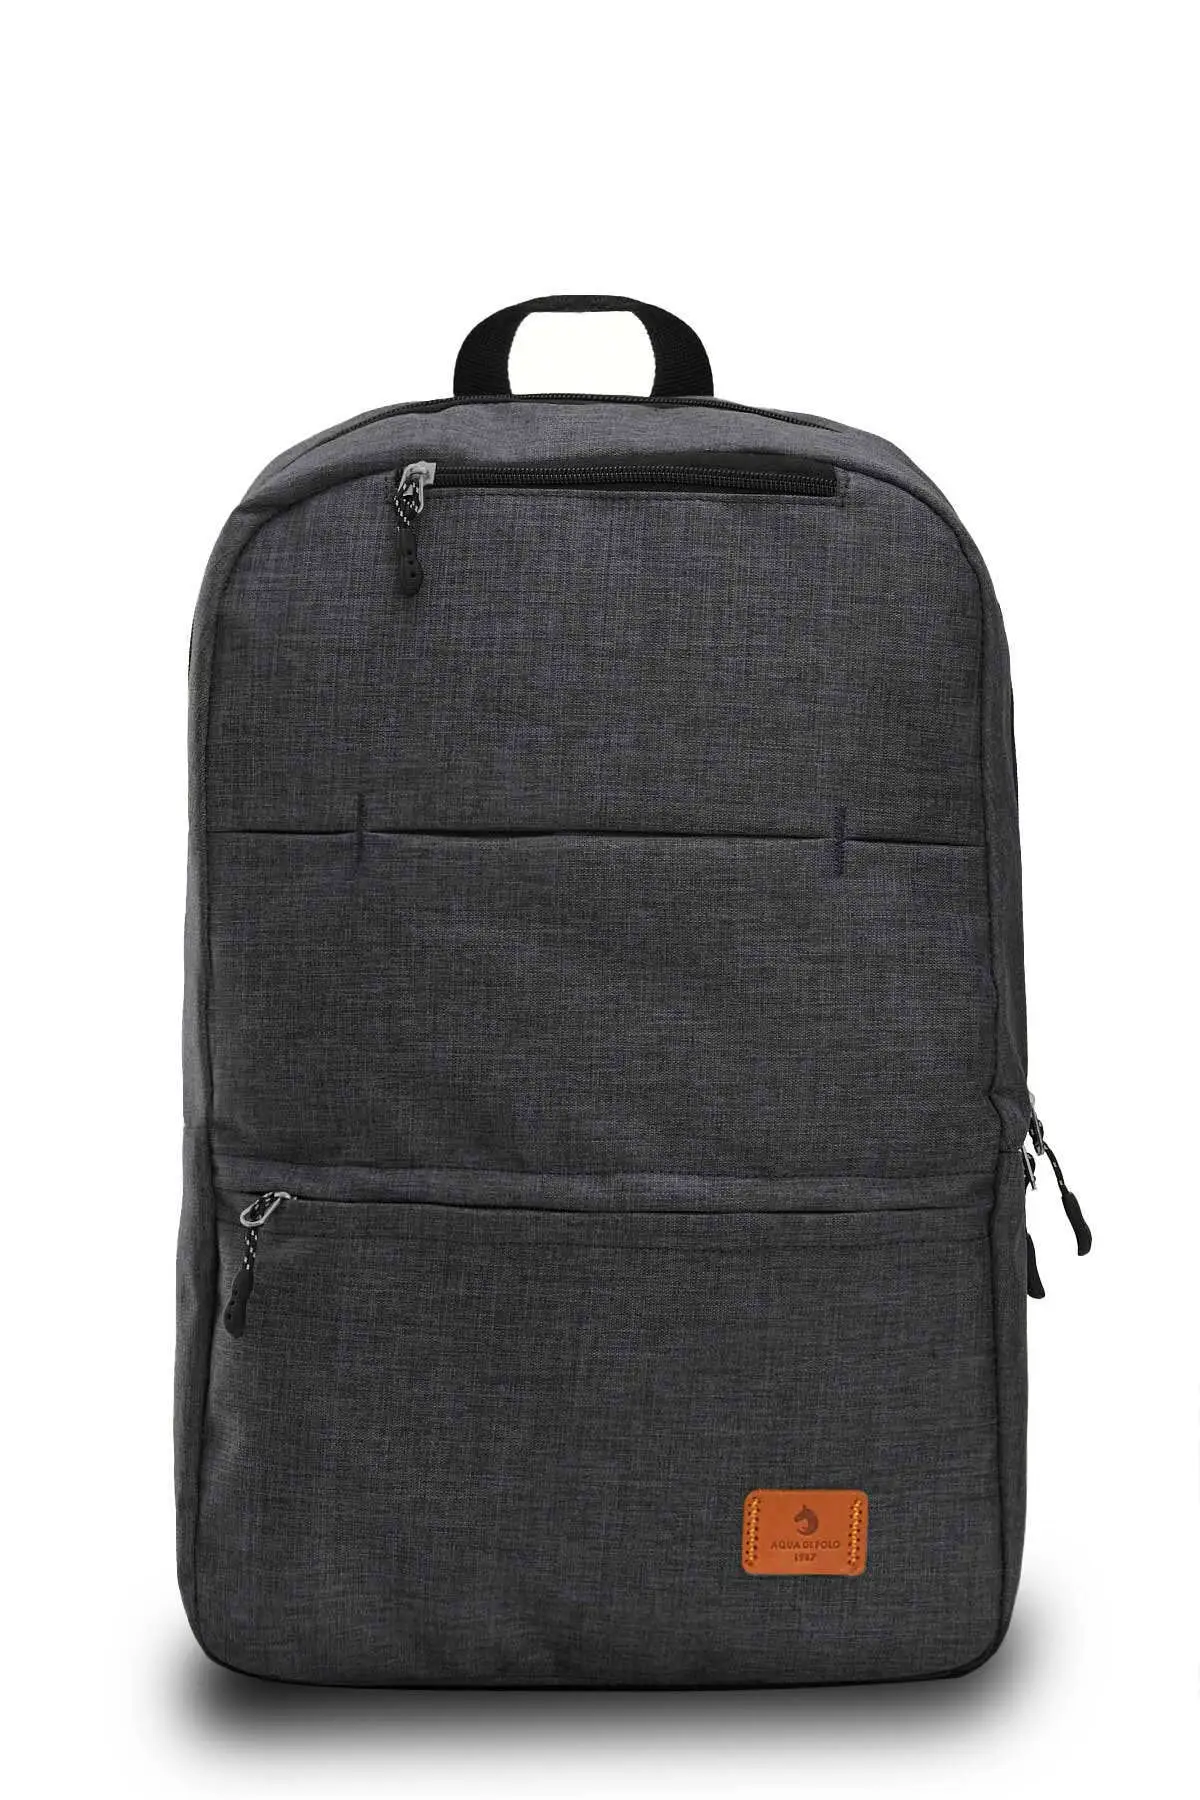 Рюкзак для ноутбука, спортивный рюкзак для ноутбука, цветной рюкзак, деловой городской рюкзак унисекс, школьная сумка, деловая сумка на плеч...